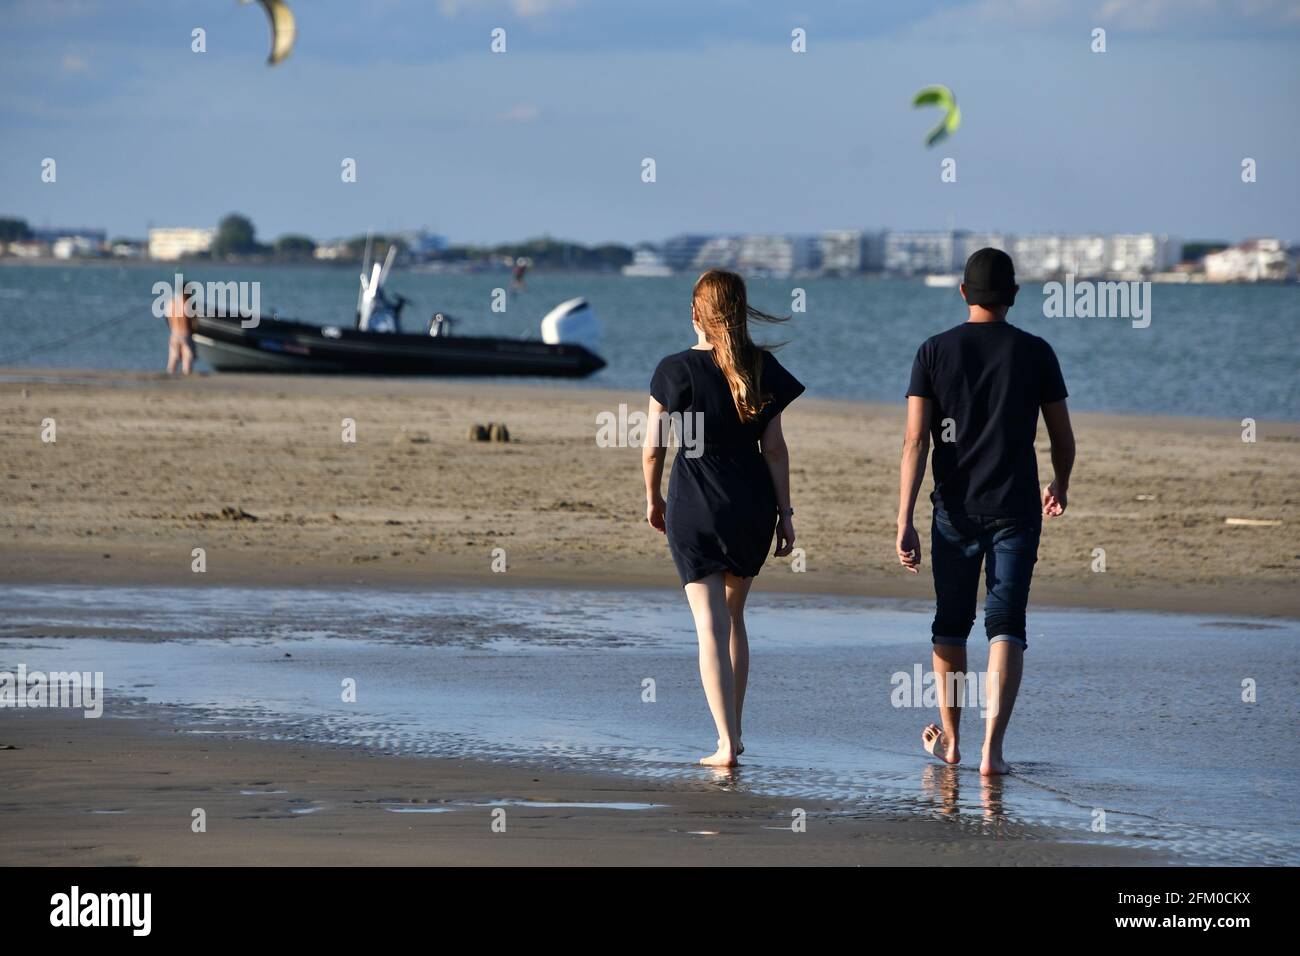 Marche homme et femme sur la plage, Port Camargue, mer Méditerranée, Palavas les Flots, Montpellier, Occitanie, sud de la France Banque D'Images